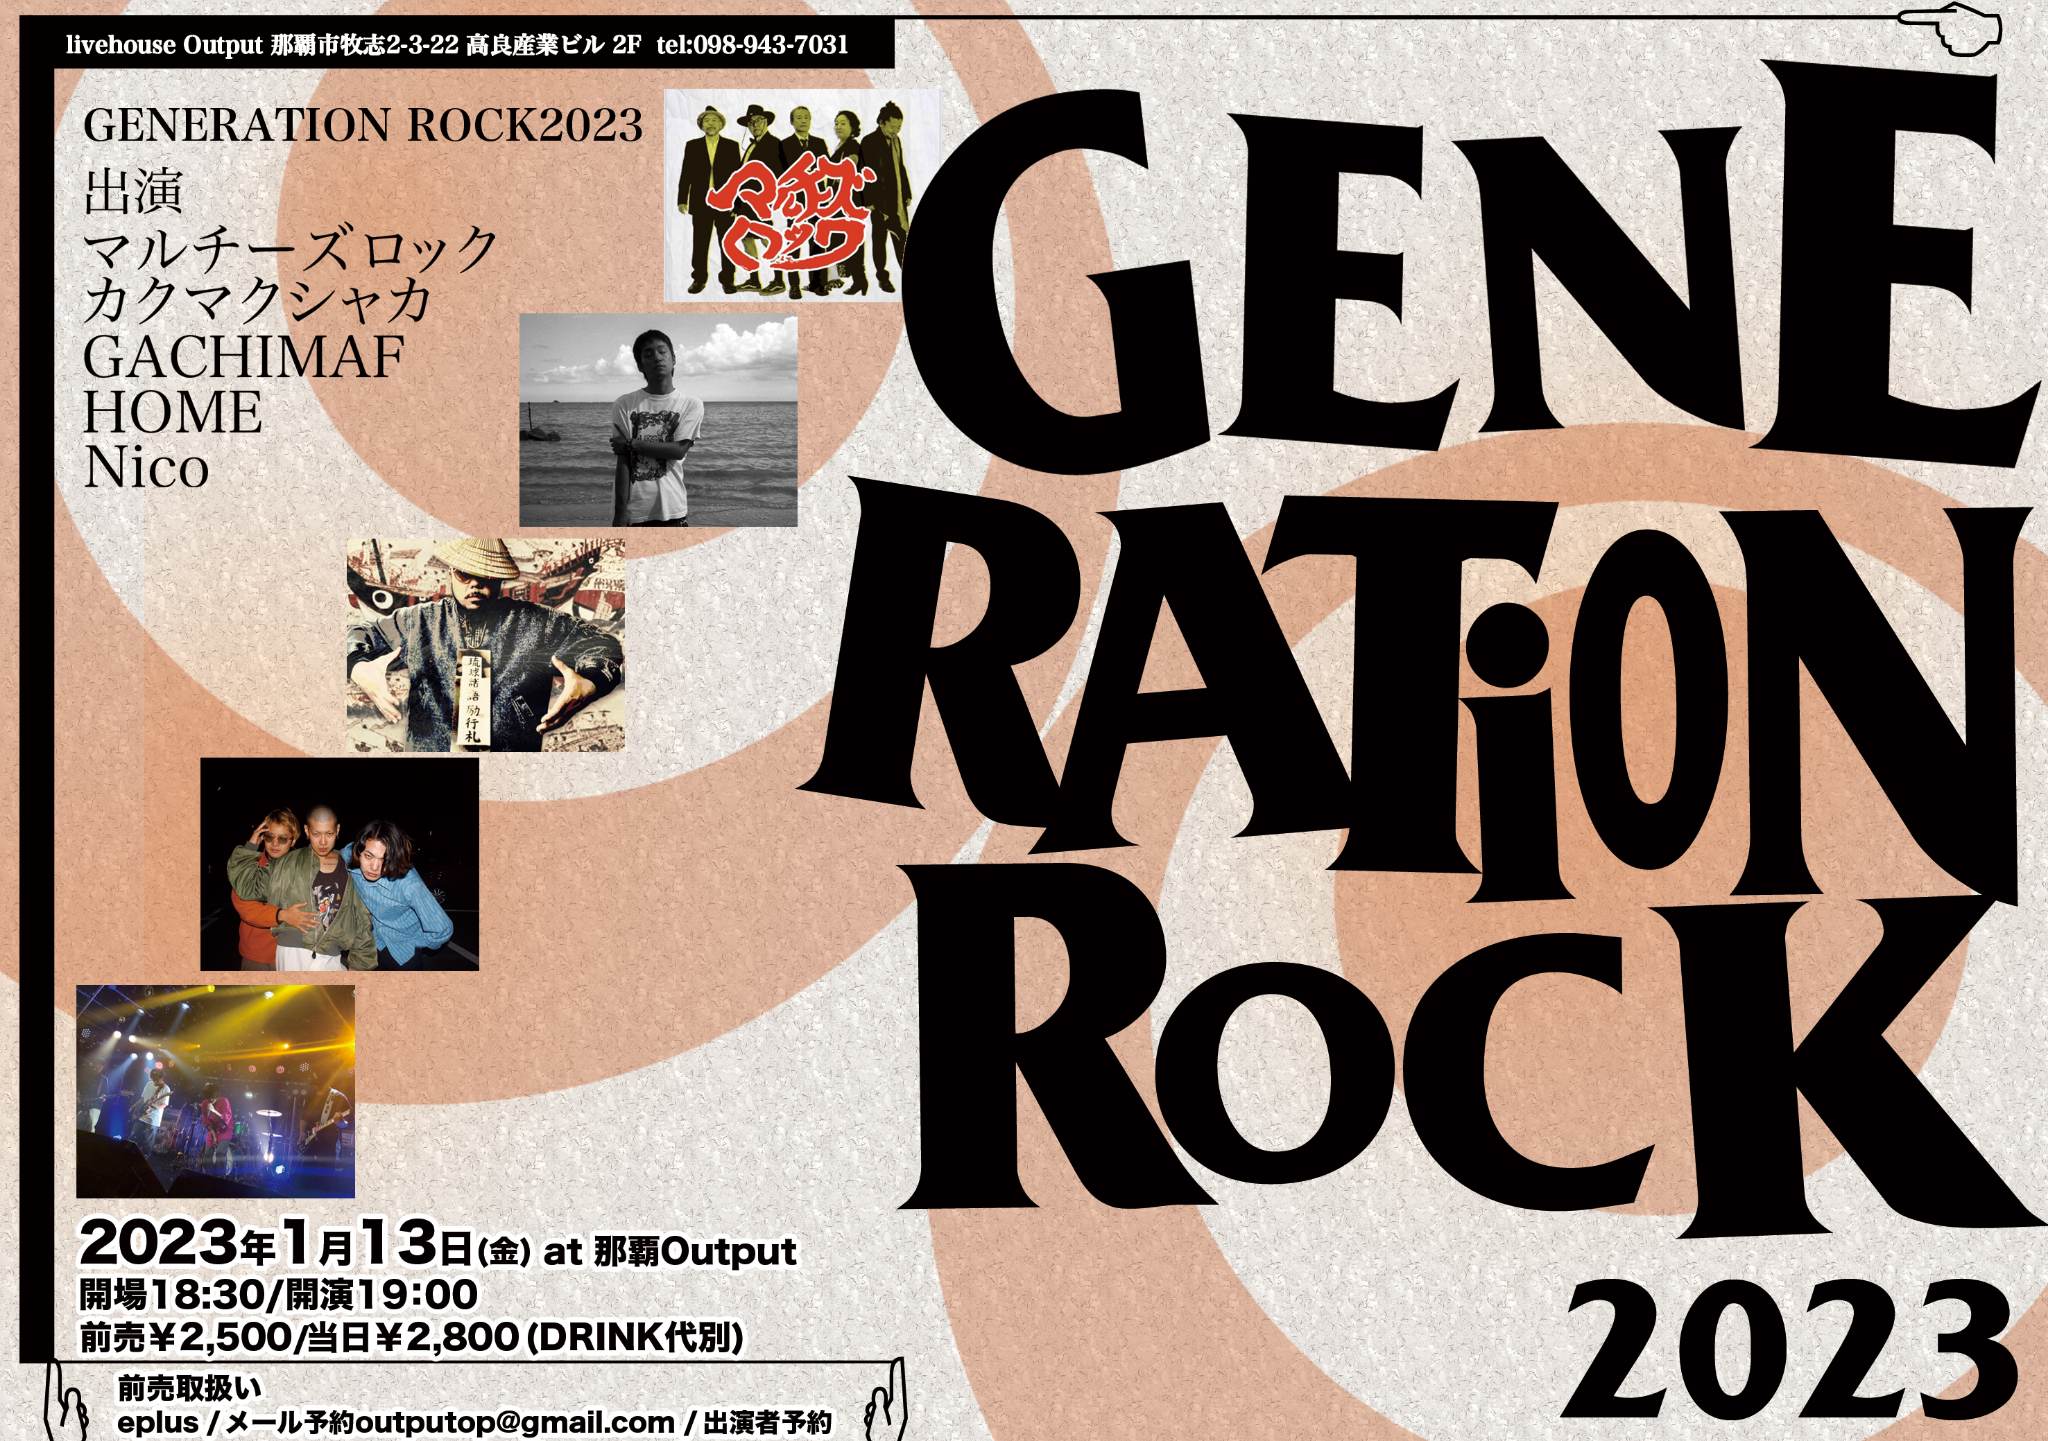 2023/01/13(金) 那覇 Output 『GENERATION ROCK 2023』